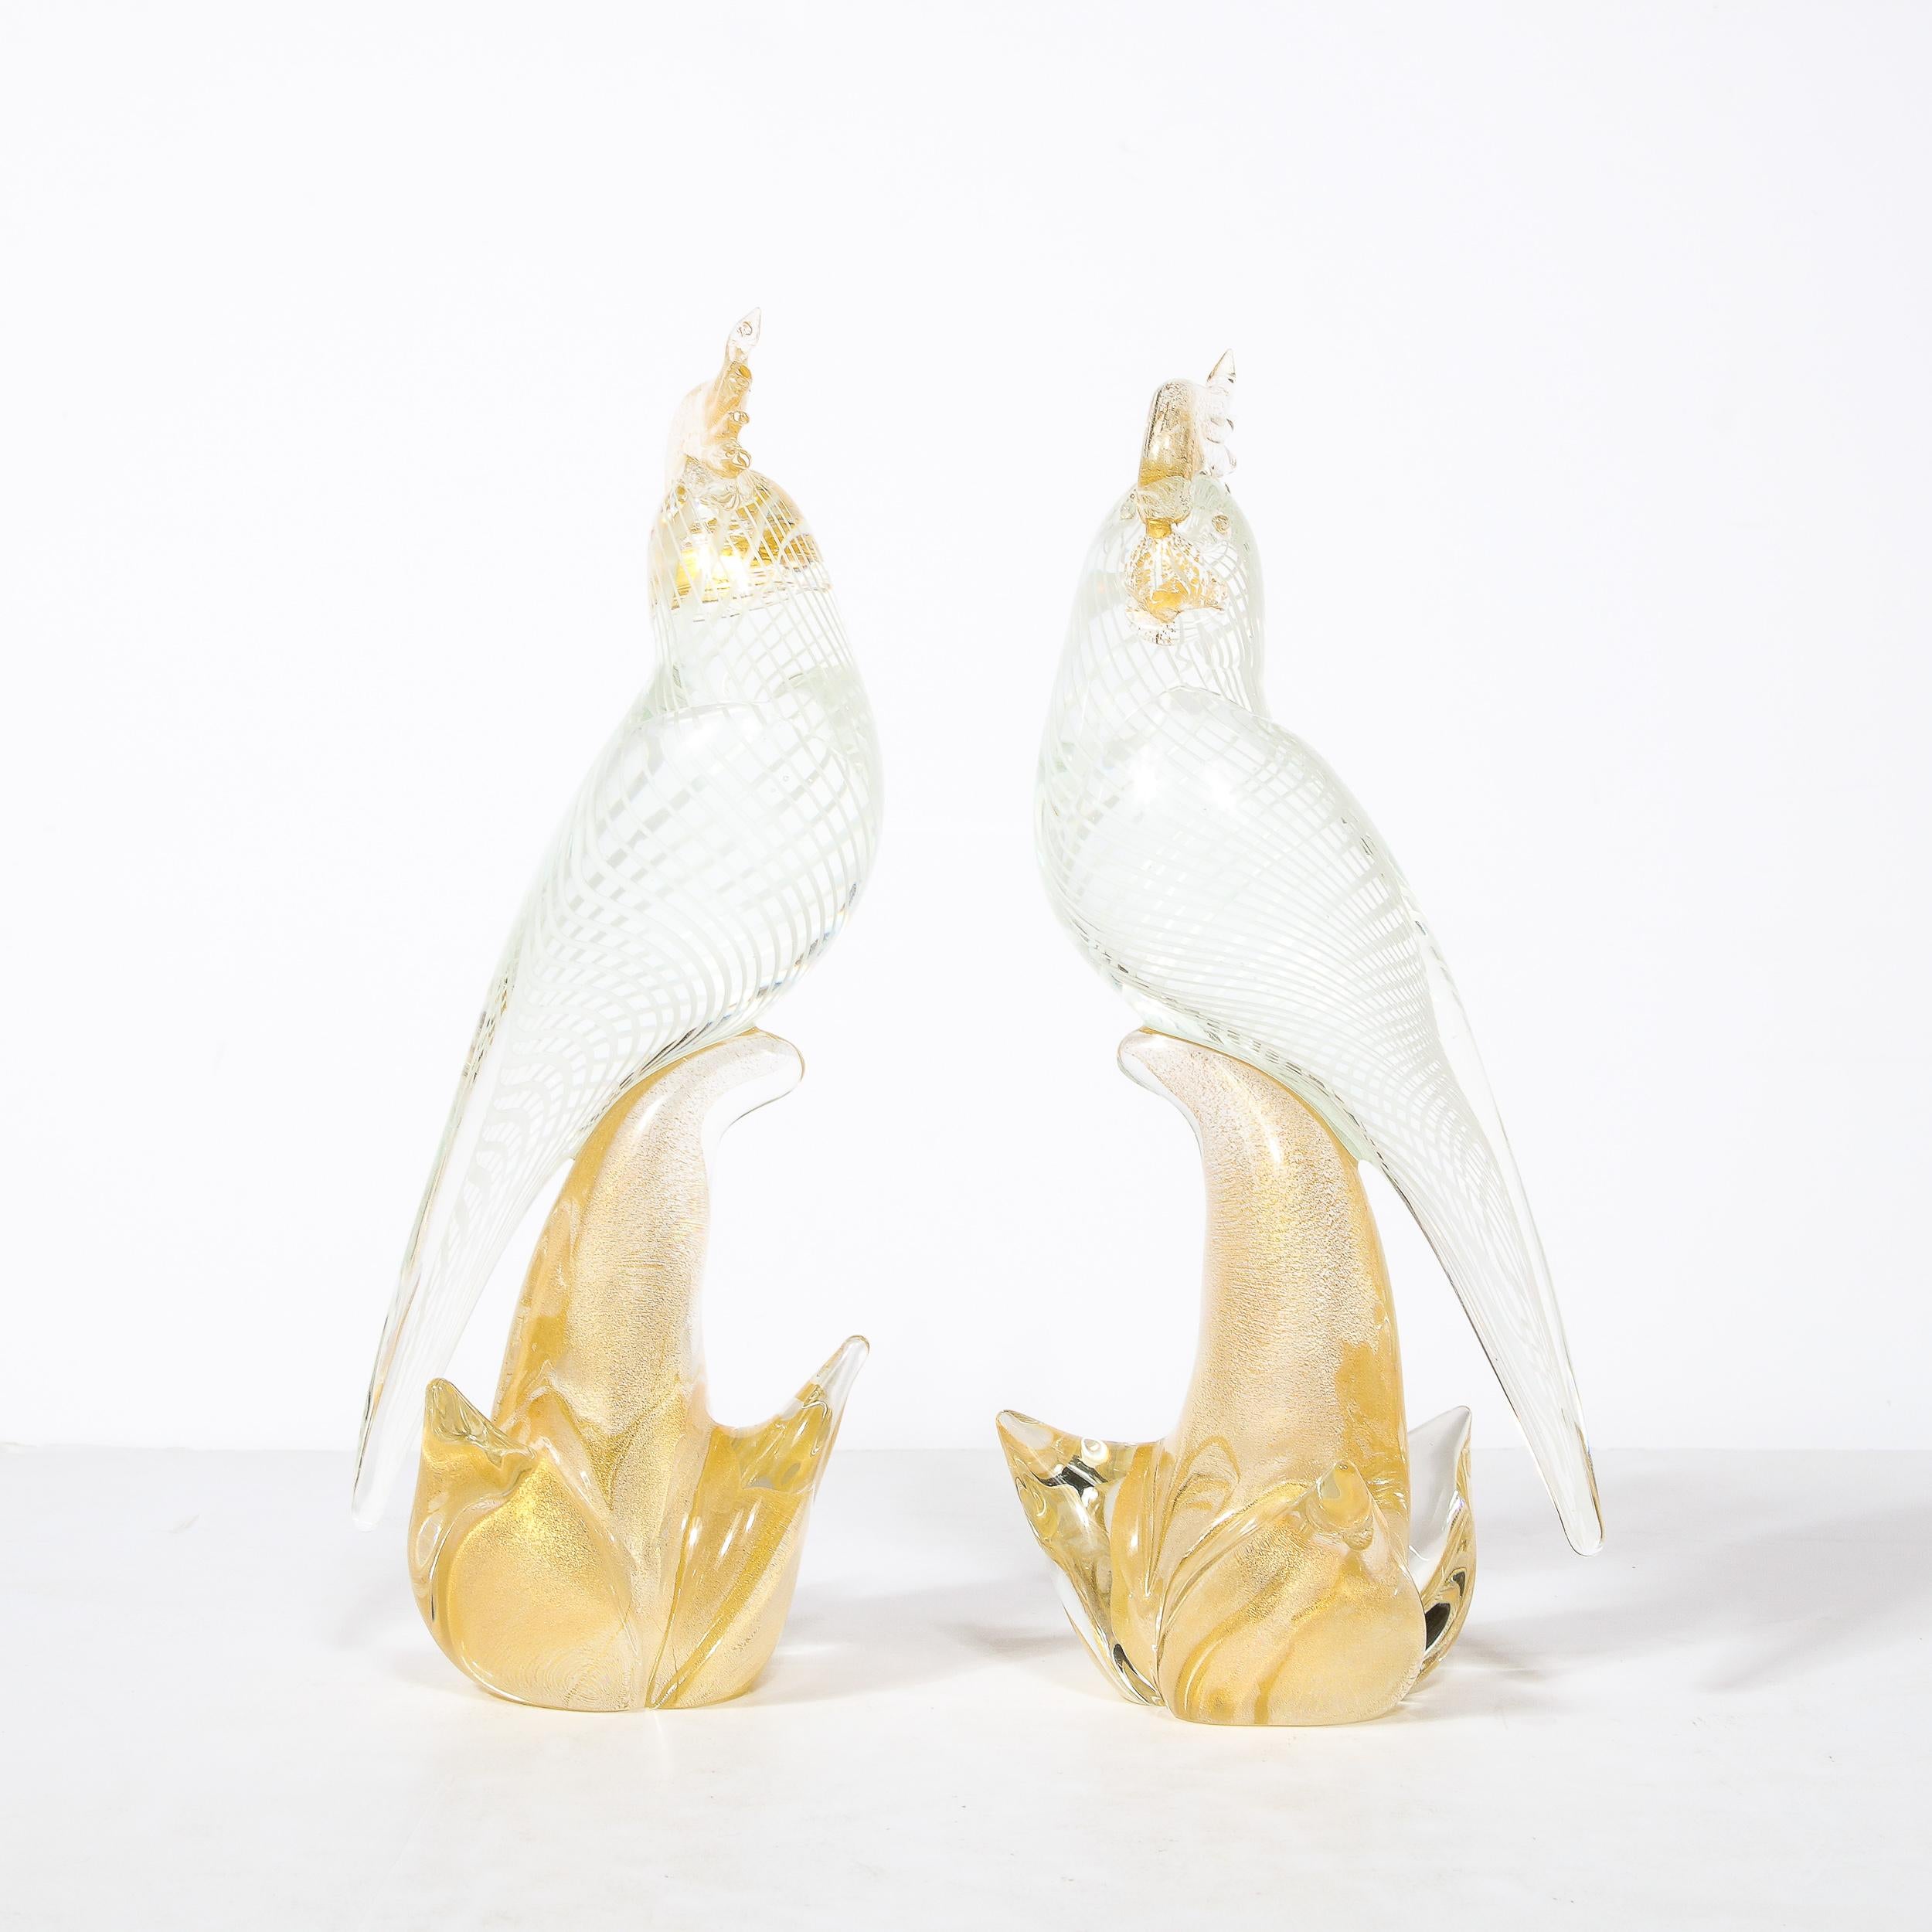 Italian Hand-Blown Murano Glass Cockatiels w/ Filigree Details and 24 Karat Gold Flecks